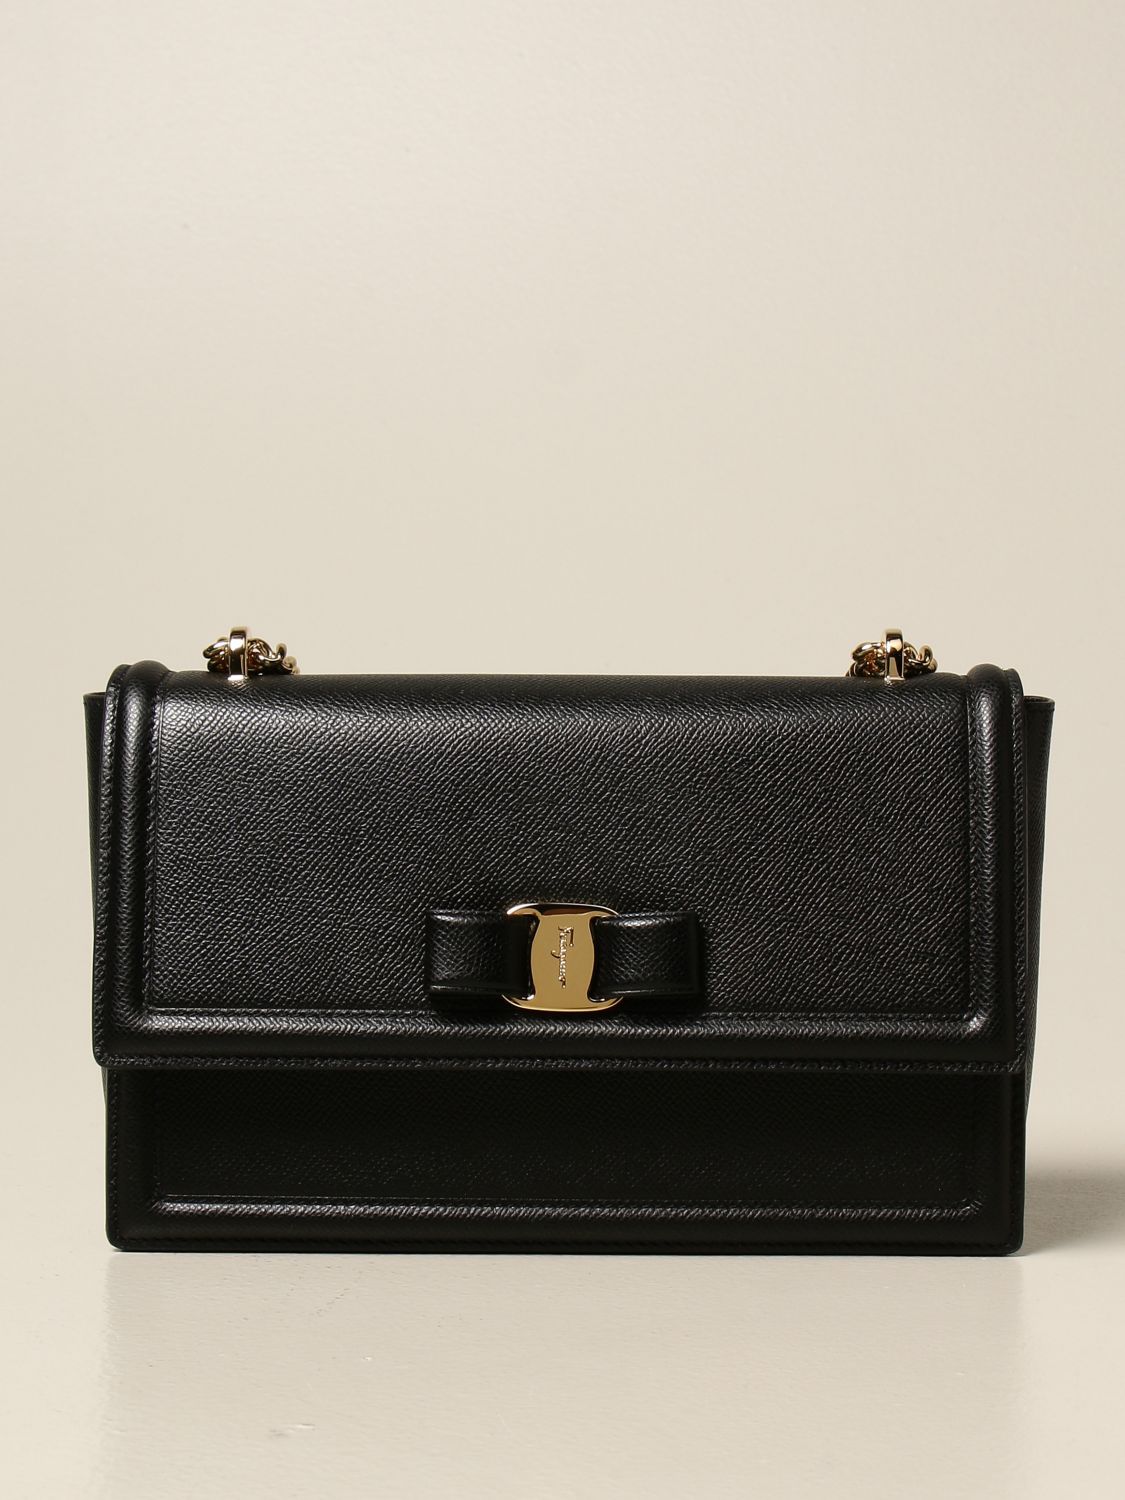 FERRAGAMO: Ginny leather bag with Vara bow - Black  Ferragamo crossbody  bags 21G462 720576 online at